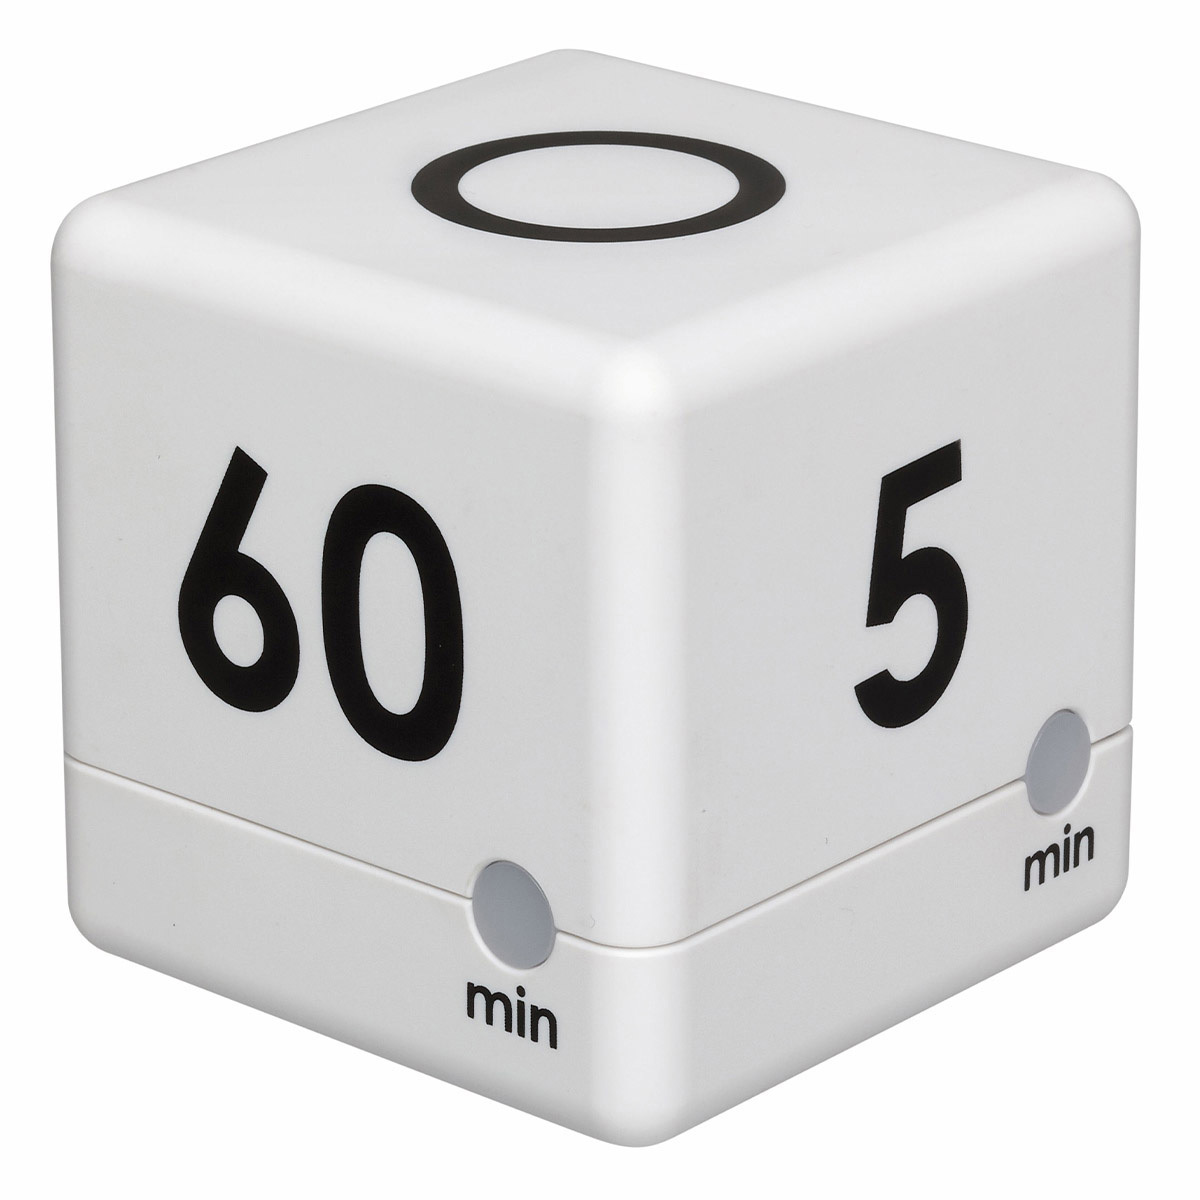 TFA 38.2041.07 Cube Eieruhr digital Würfeltimer Kurzzeitmesser 4 Ablaufzeiten 